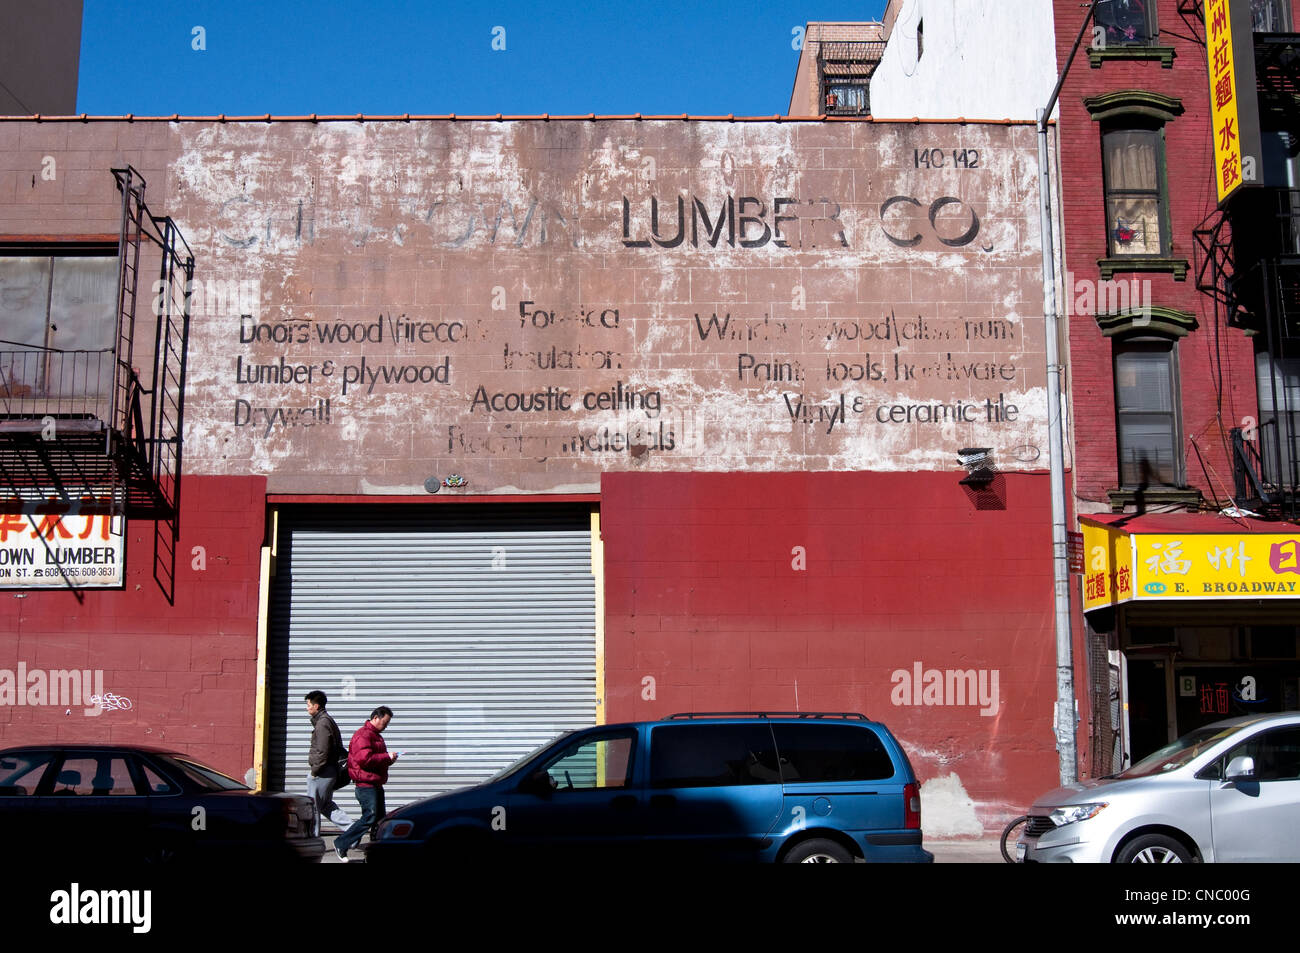 Ein alter Hase malte Werbung [Geist Zeichen] für Chinatown Lumber Co. am East Broadway in Chinatown, New York City, USA. Stockfoto